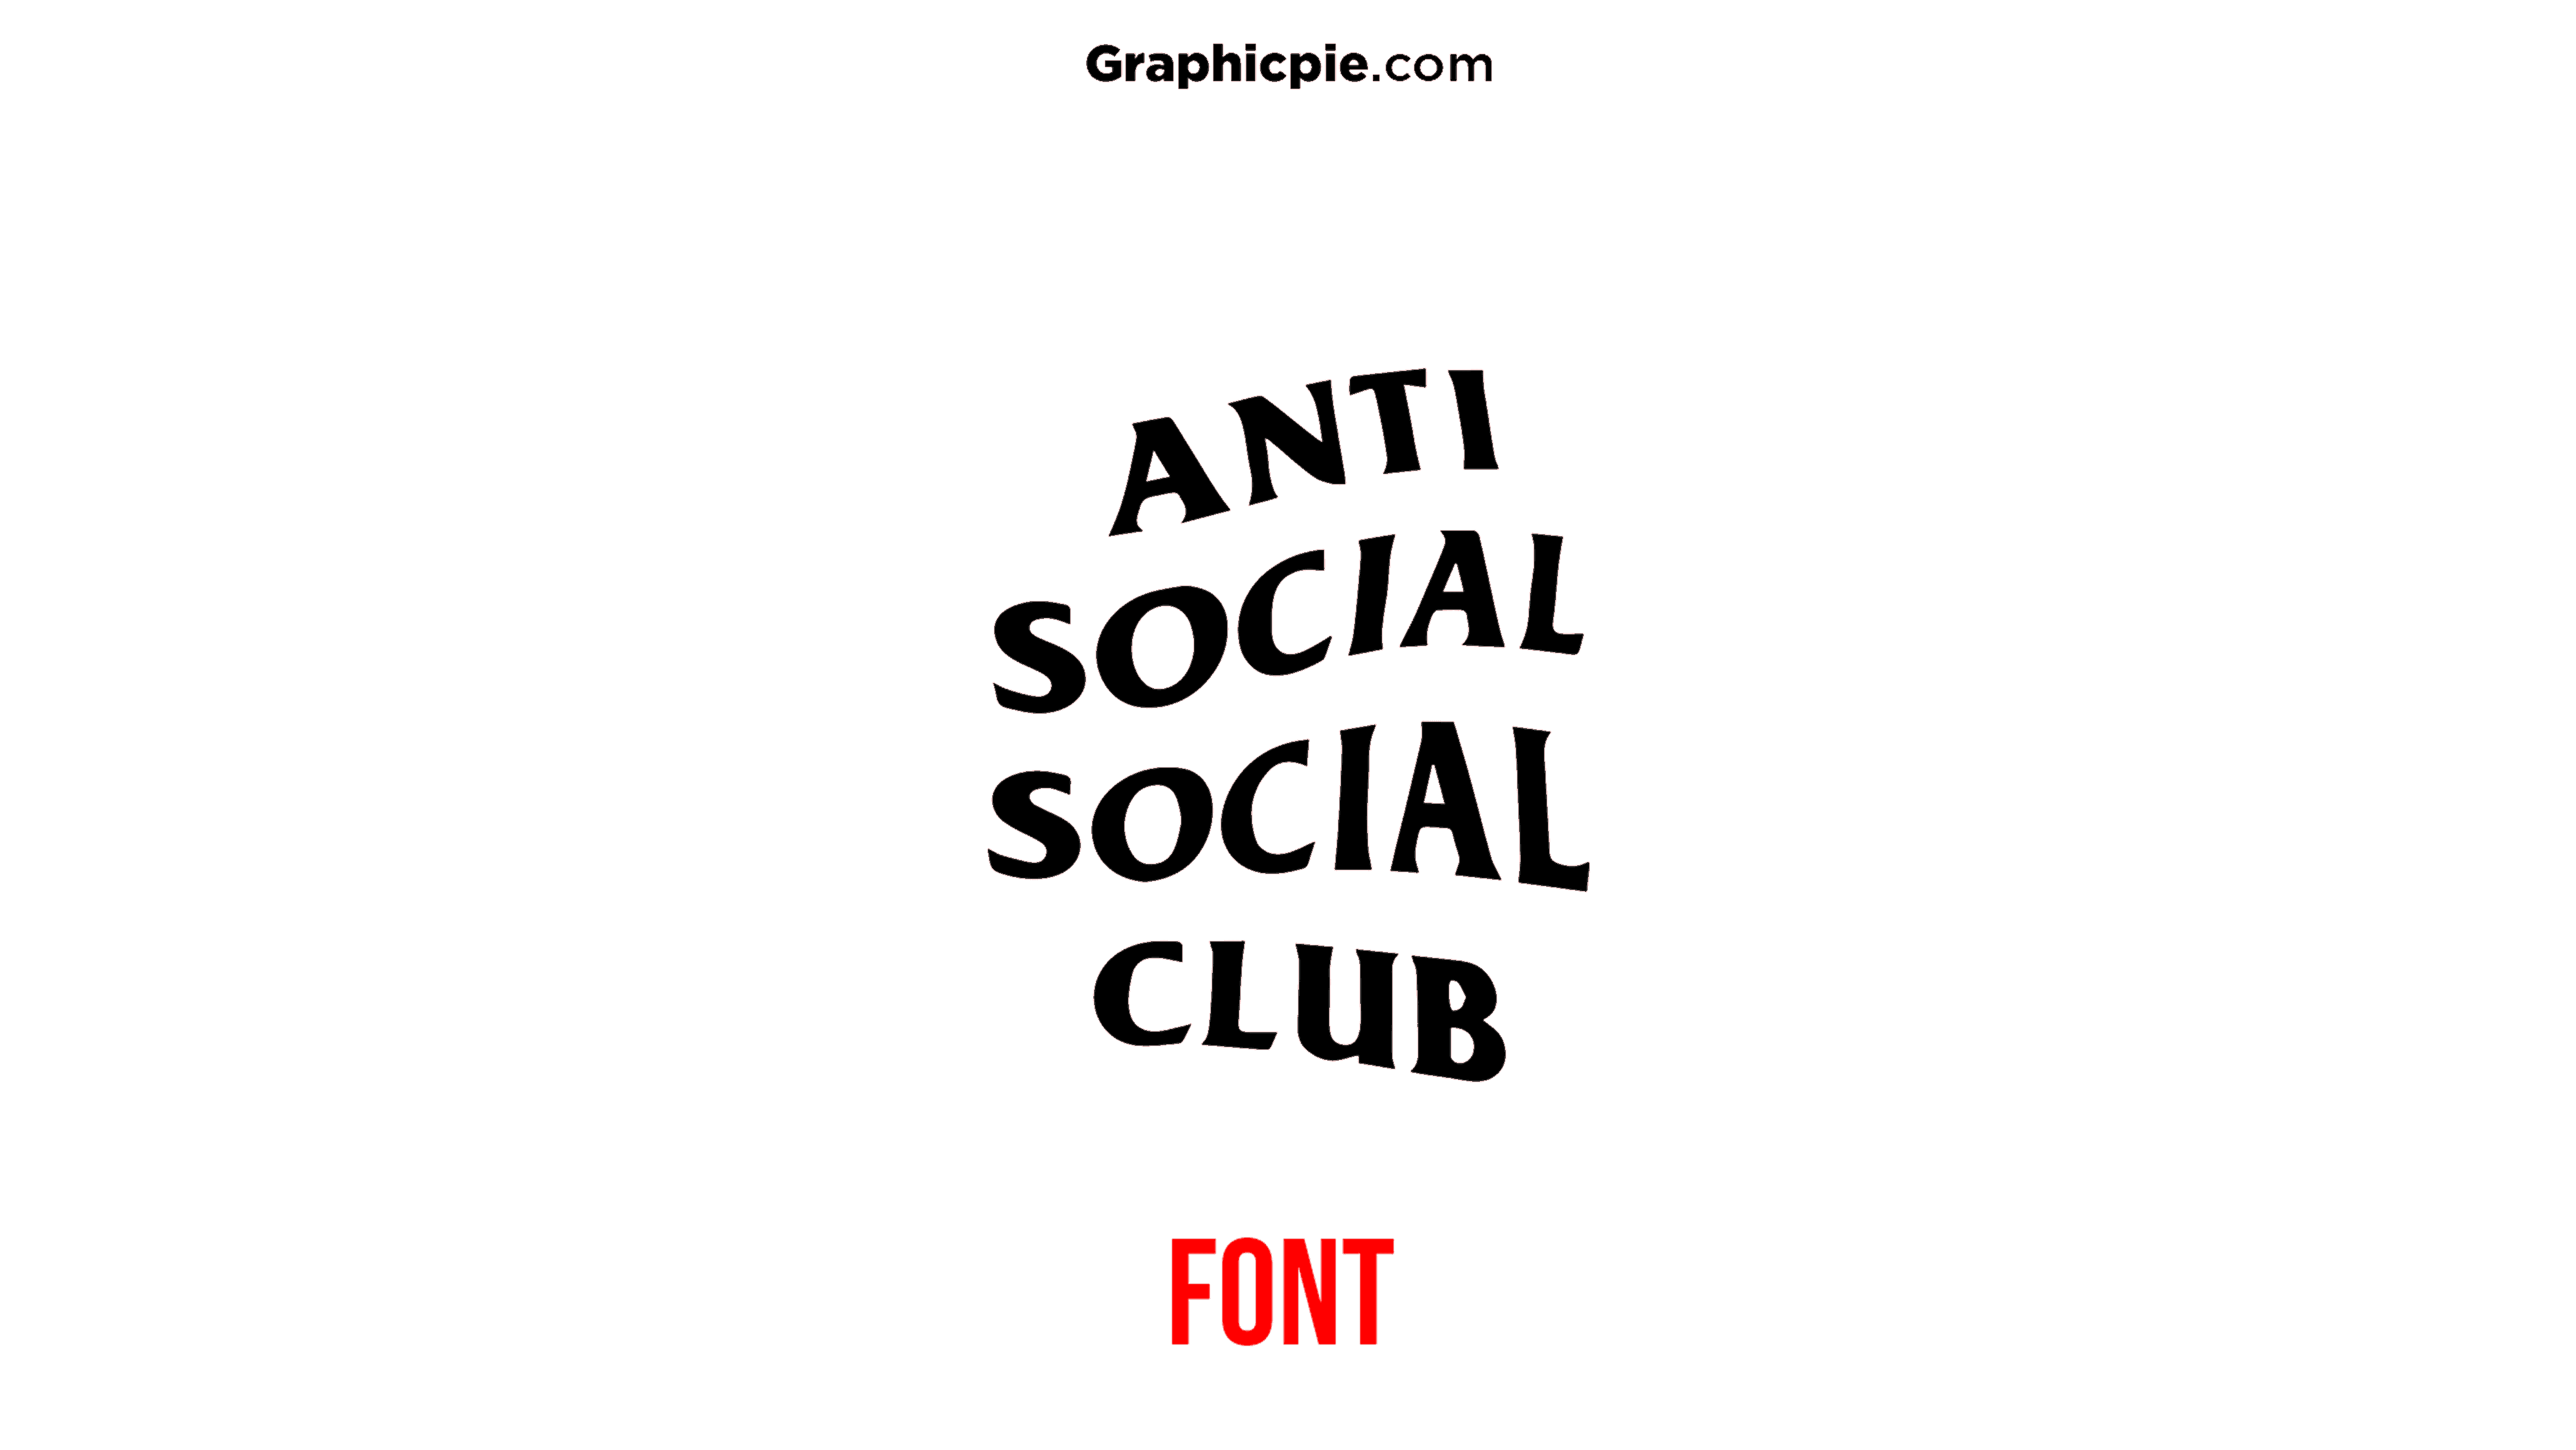 Anti Social Social Club Font - Graphic Pie